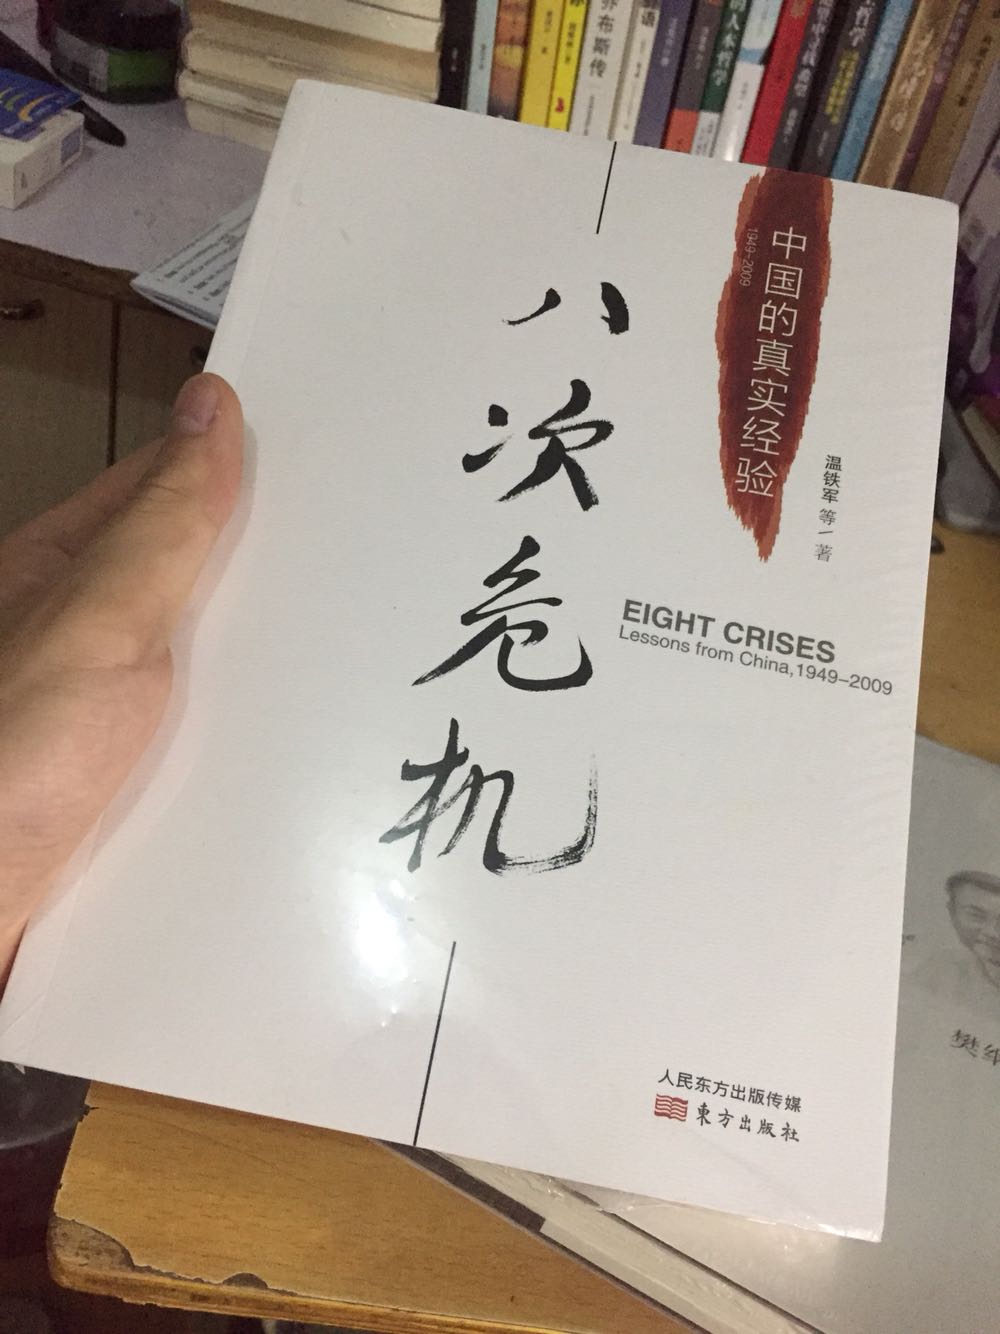 一本值得看的好书推荐给大家分享 中国真实的经验